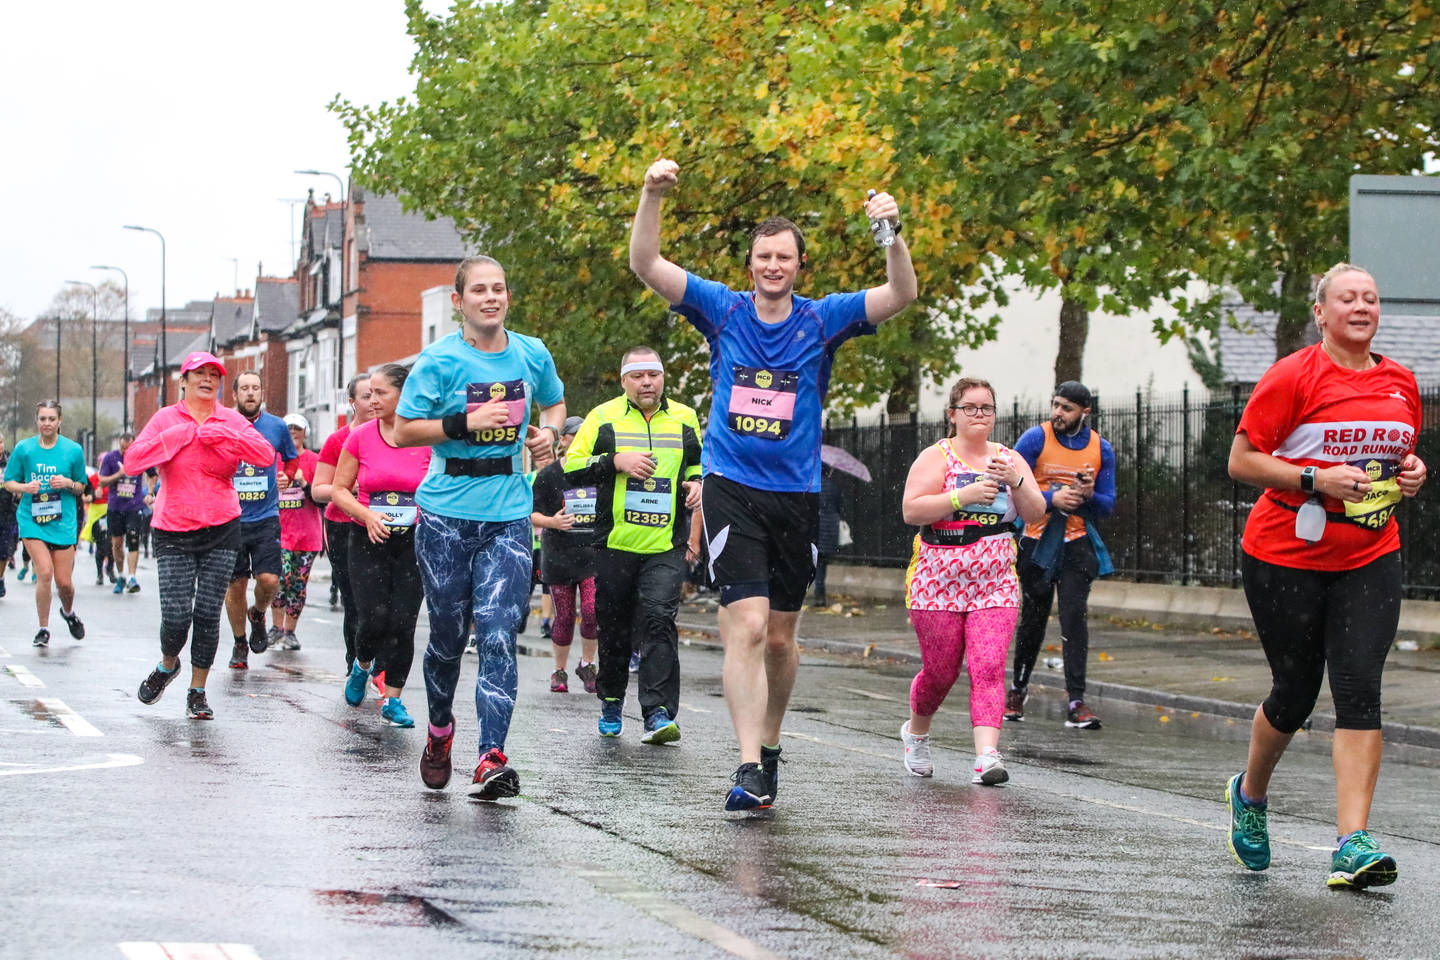 Runners taking part in Manchester Half Marathon 2018